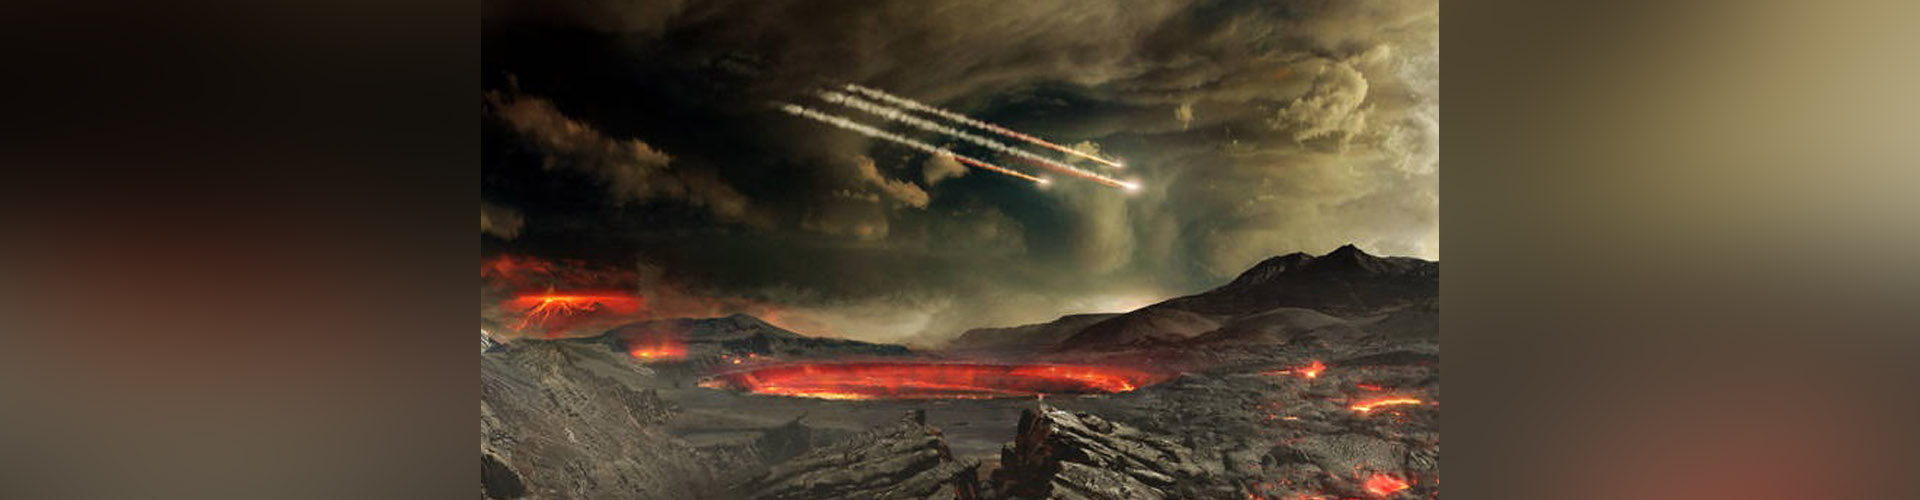 Meteoritos gigantes crearon los continentes mediante impactos, señala estudio